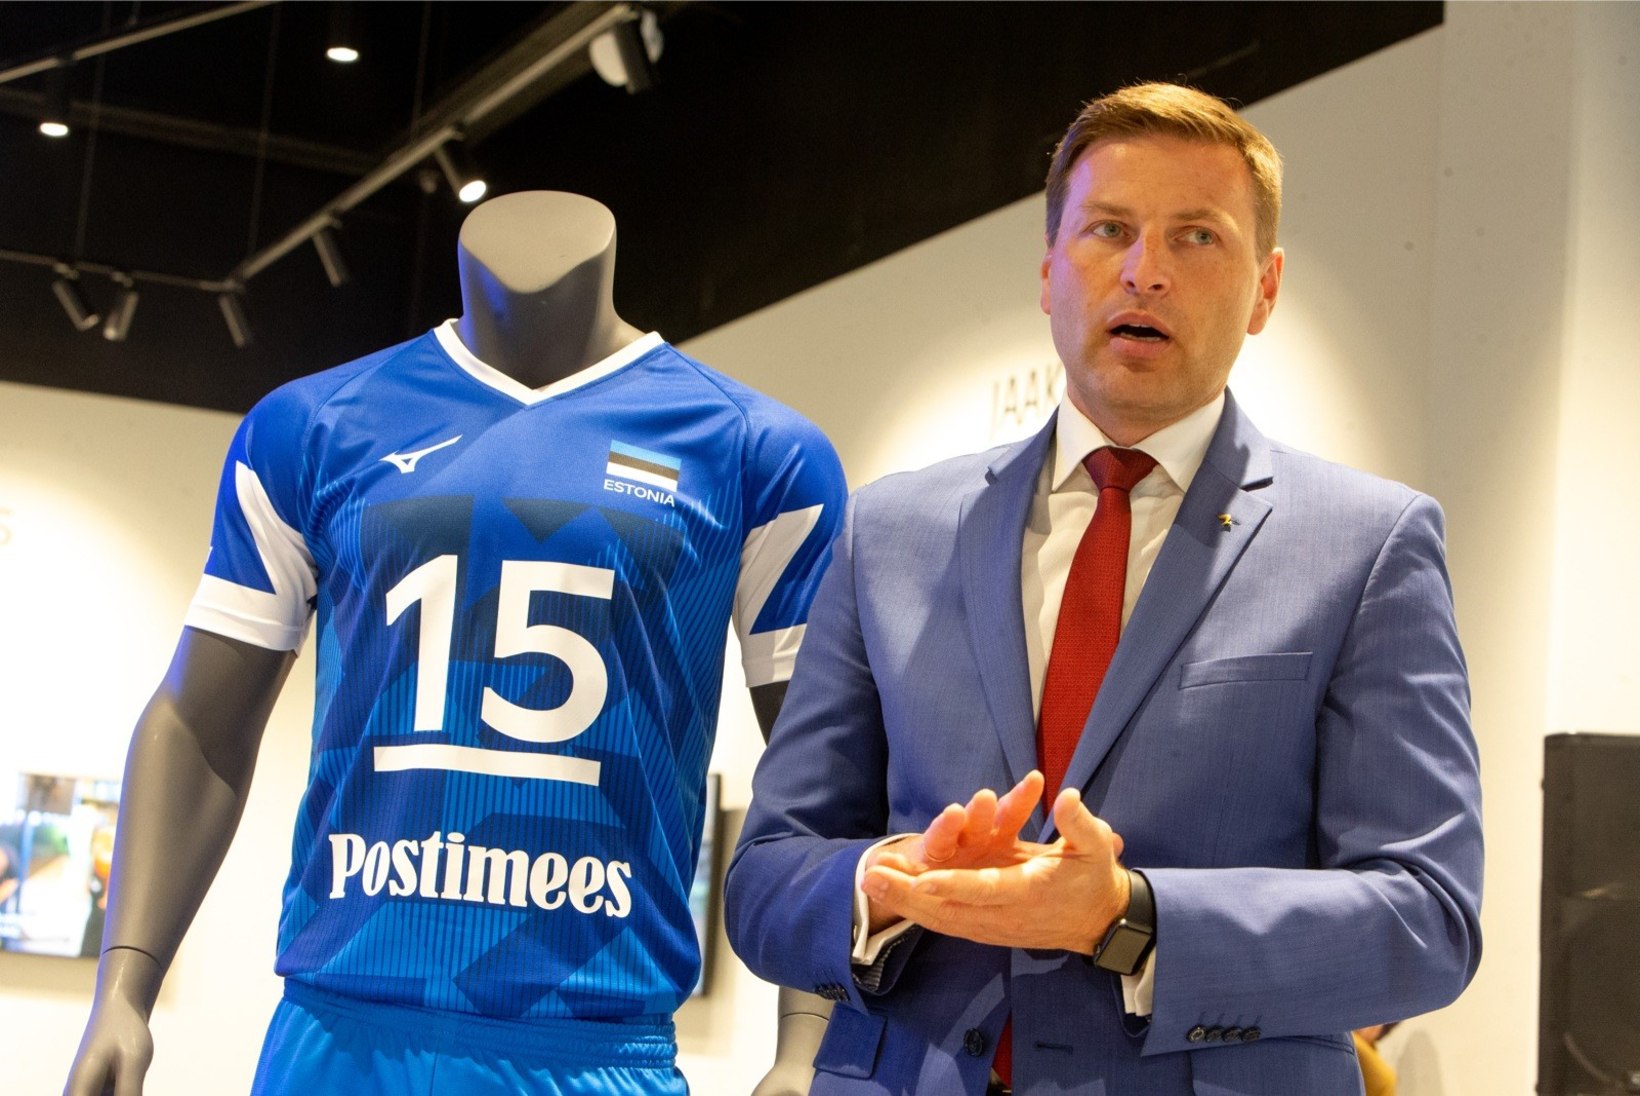 Eesti on lähedal 2021. aasta võrkpalli EM-finaalturniiri korraldamisele, kuid korvpallurid võivad plaanile vee peale tõmmata